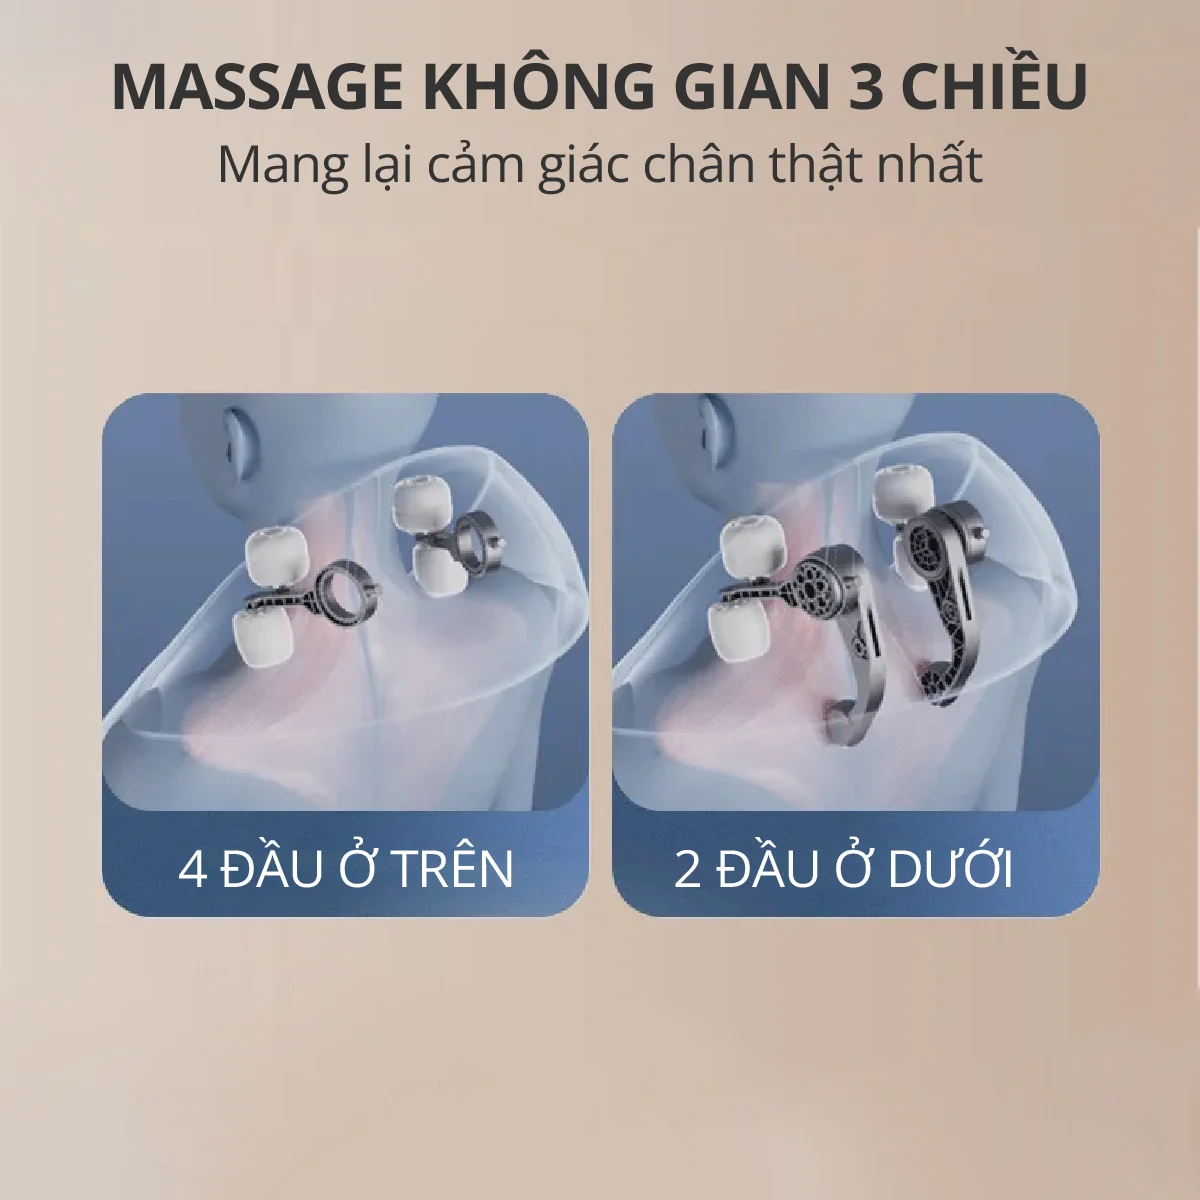 Máy Massage Cổ Vai Gáy Kachi MK366 - Hàng chính hãng